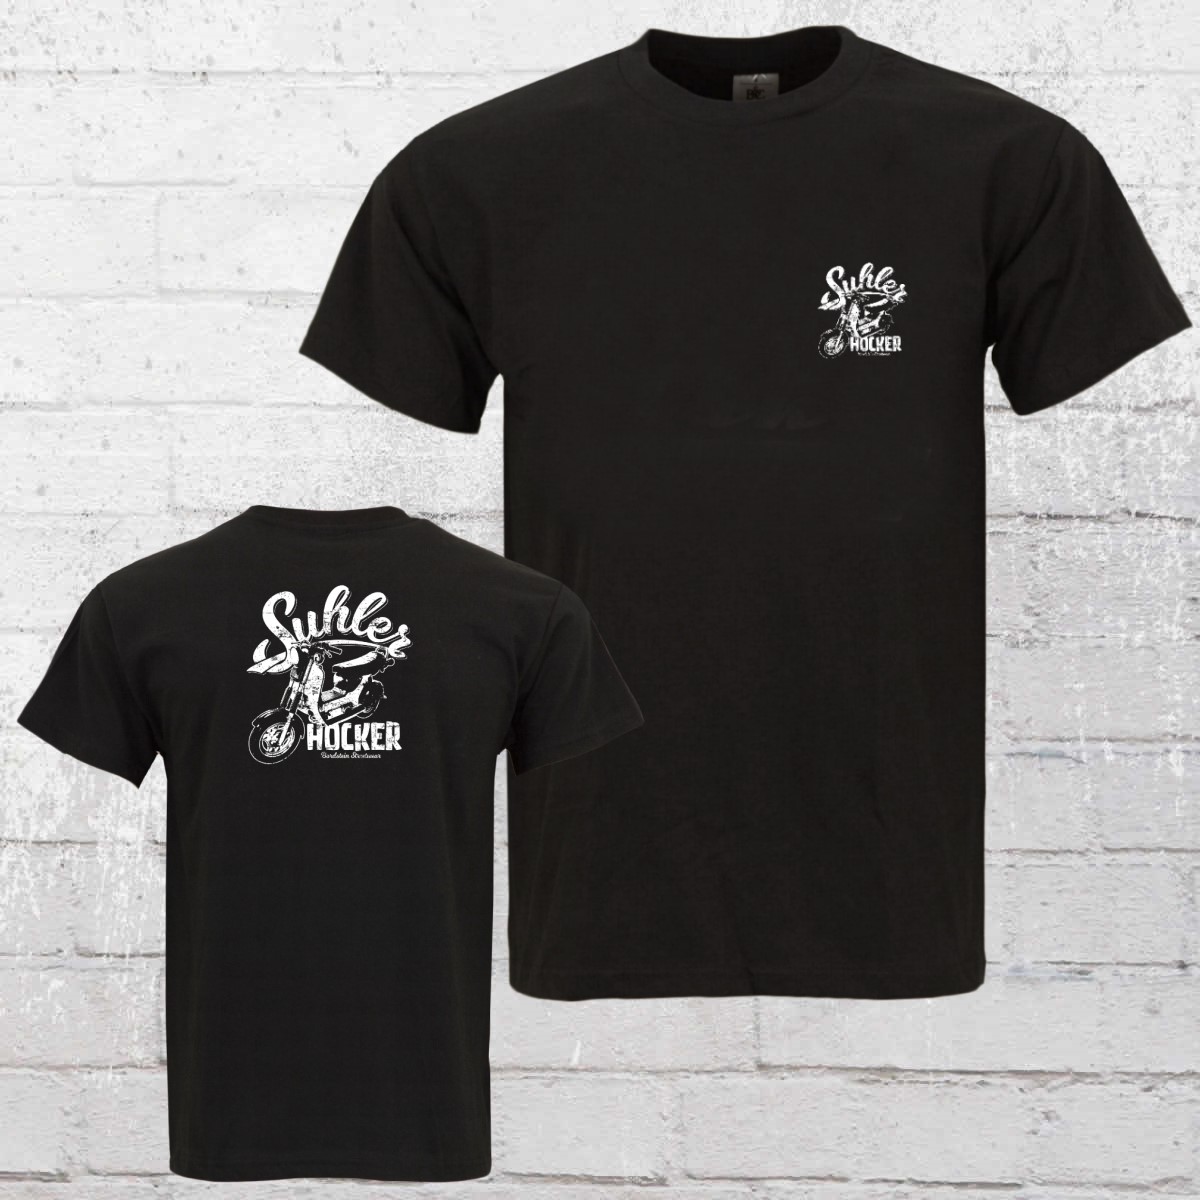 Order now | Bordstein Mens T-Shirt SR50 Suhler Hocker 2 black